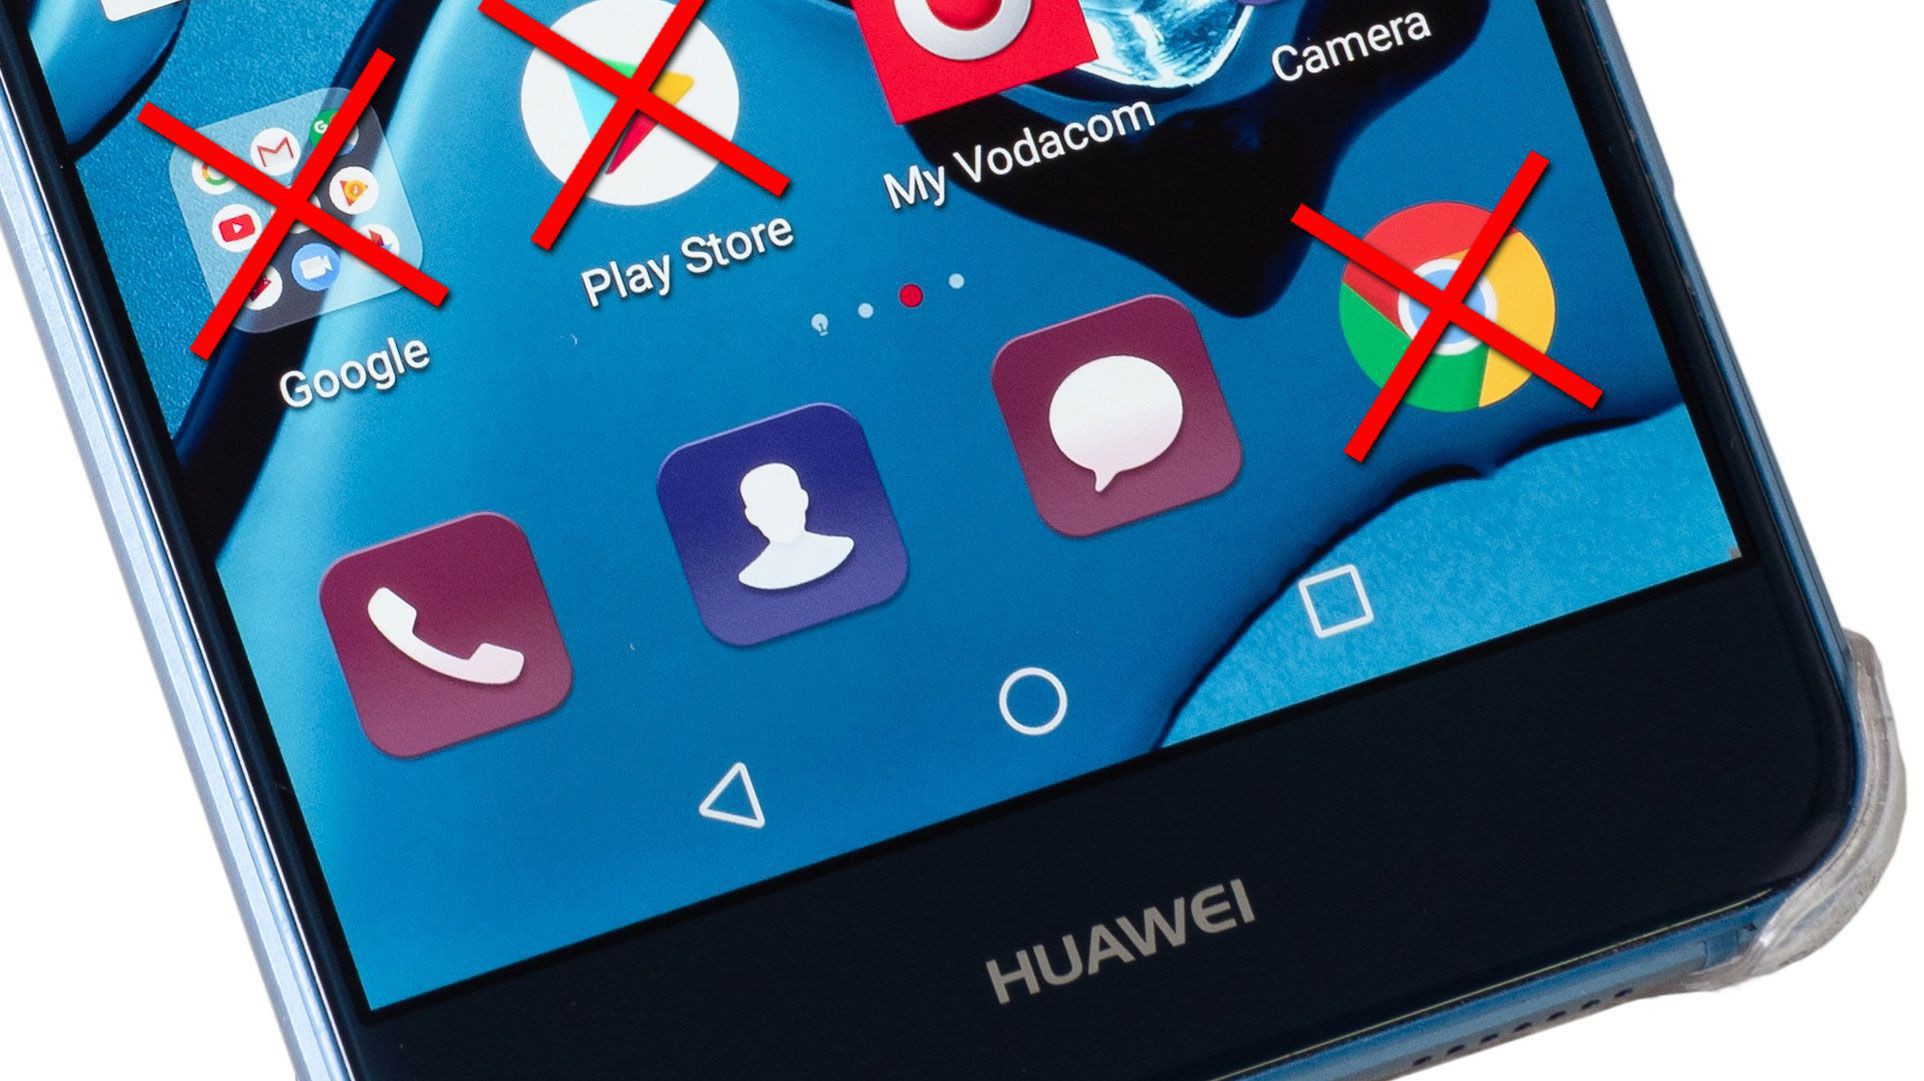 Google ngưng các dịch vụ Android trên điện thoại Huawei - người dùng có bị ảnh hưởng? Huawei đáp trả ra sao?